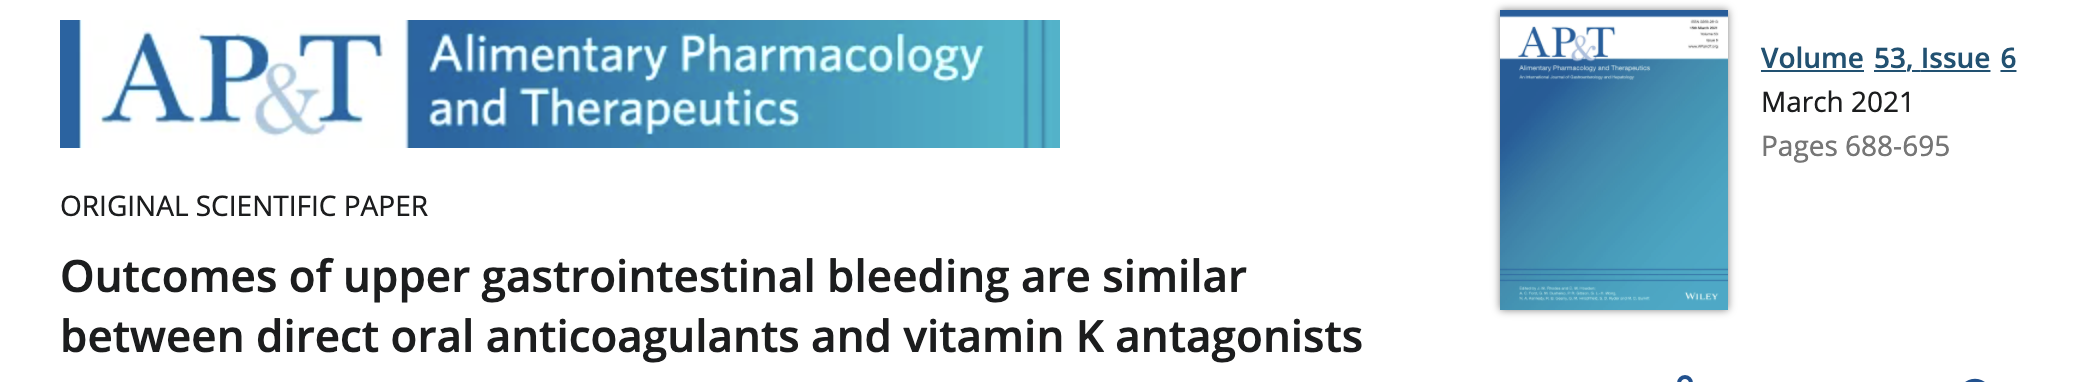 直接口服抗凝药和维生素K拮抗剂在导致上消化道出血的危险性中的比较